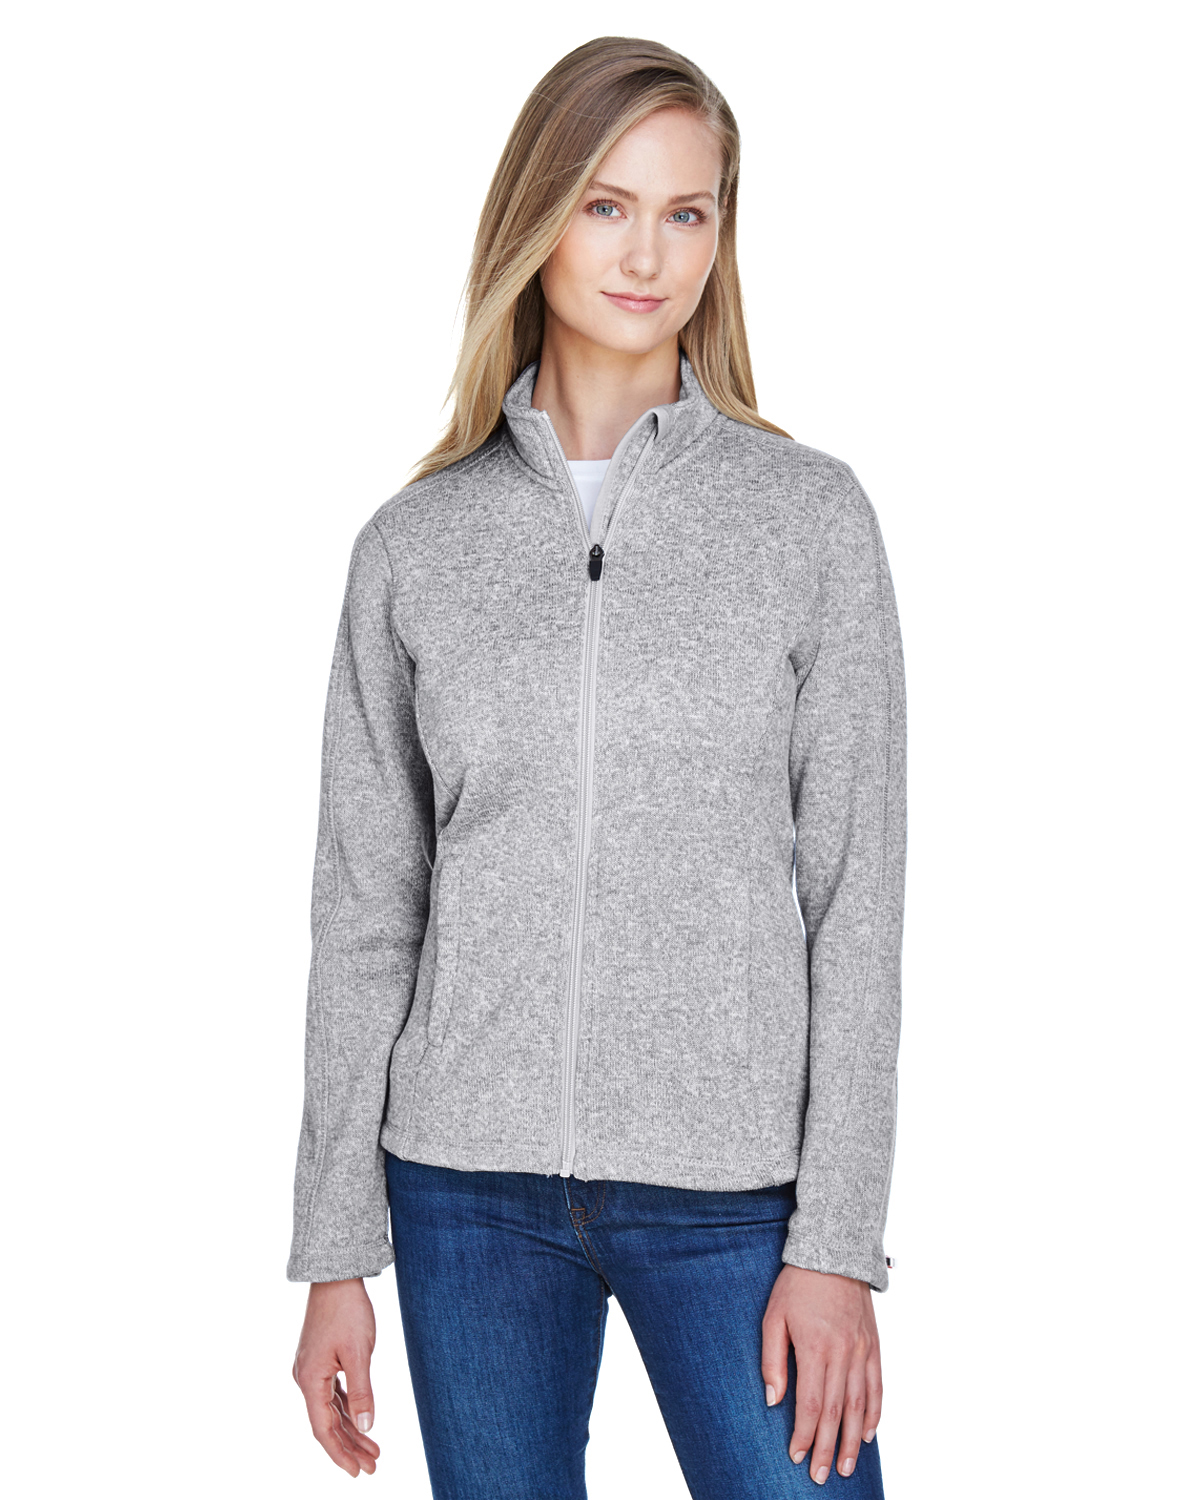 DG793W Devon & Jones Ladies\' Bristol Full-Zip Sweater Fleece Jacket